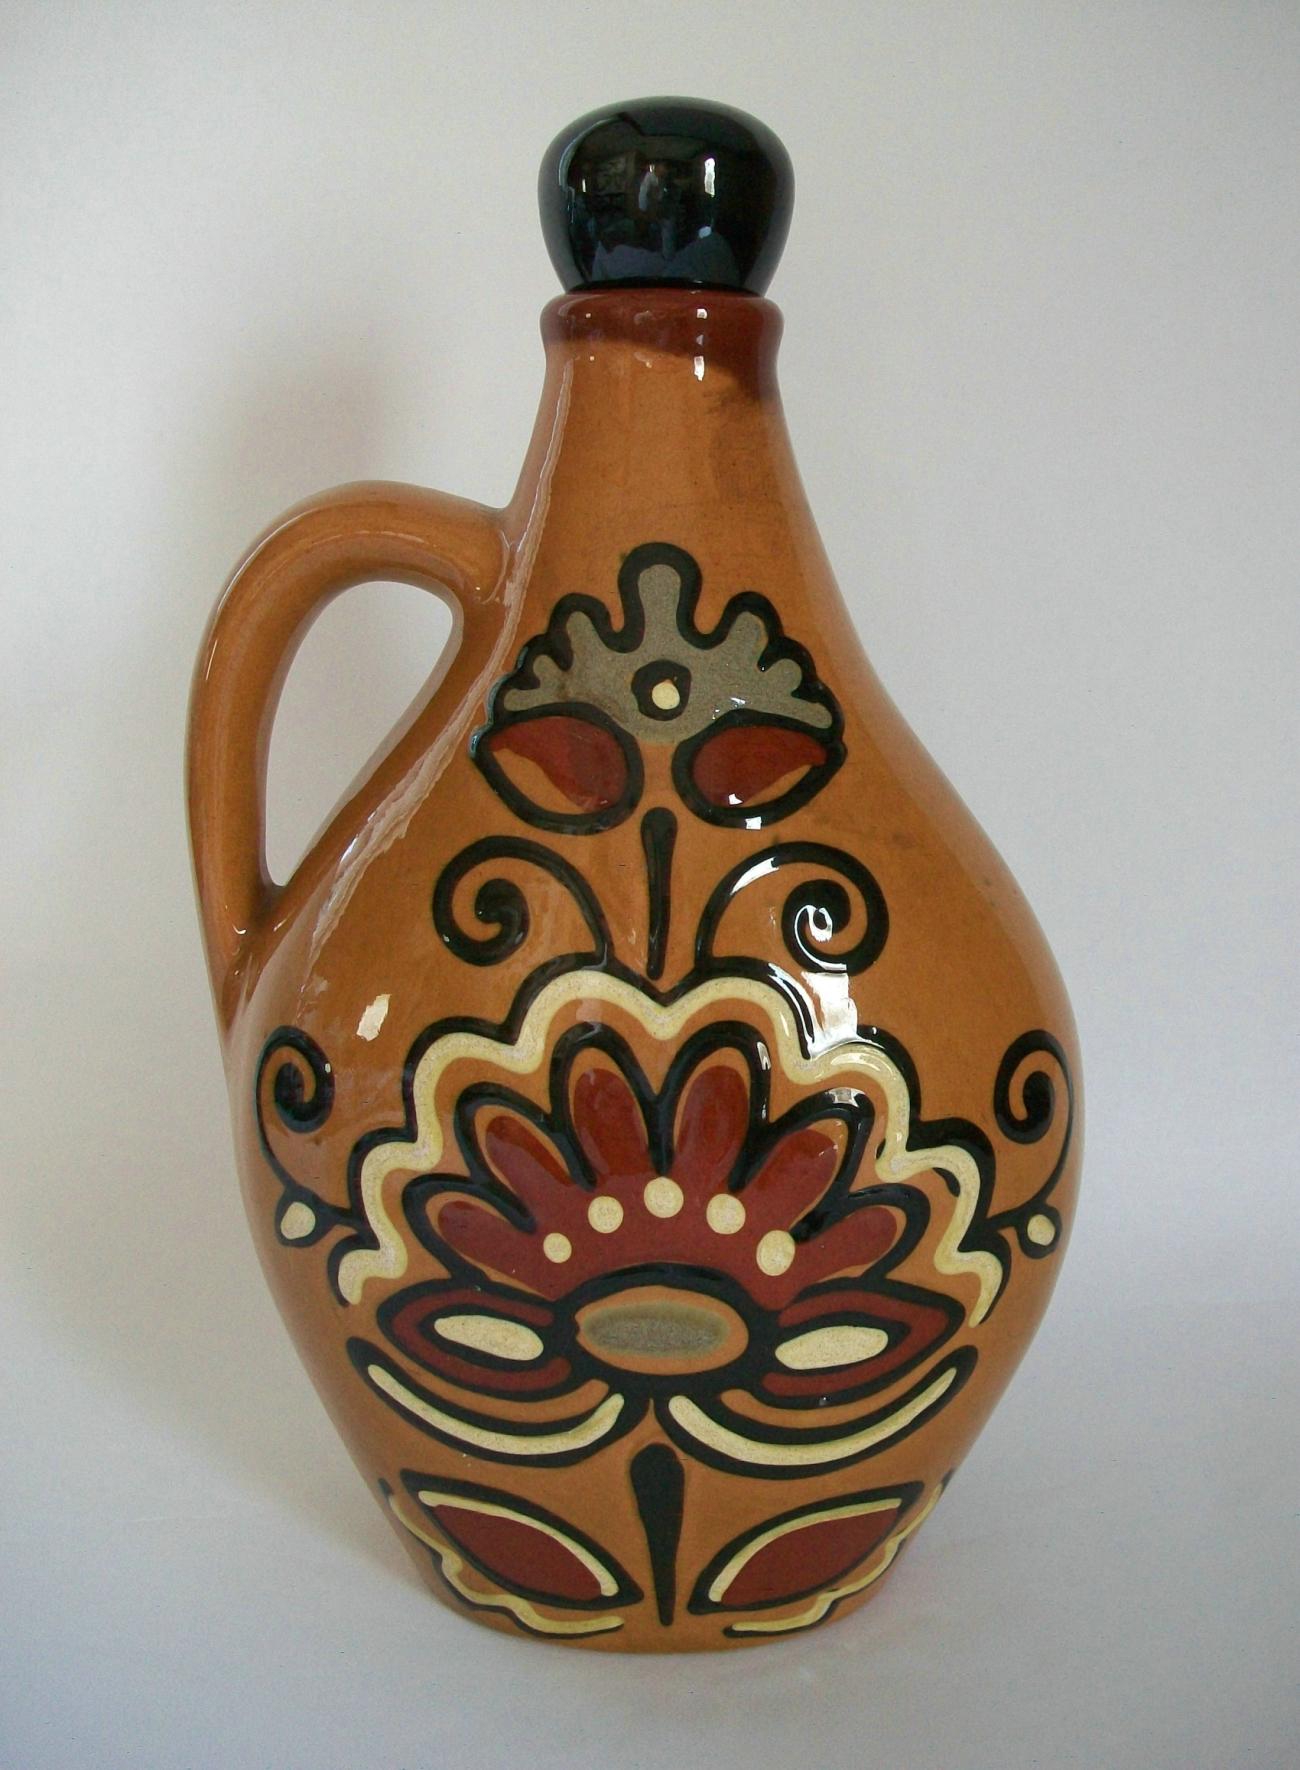 Pichet ou carafe en poterie d'art populaire de Gouda avec bouchon - décoration florale stylisée peinte à la main à l'avant et à l'arrière - glaçure claire et brillante avec détails d'engobe - vestiges d'une ancienne étiquette d'usine ou de